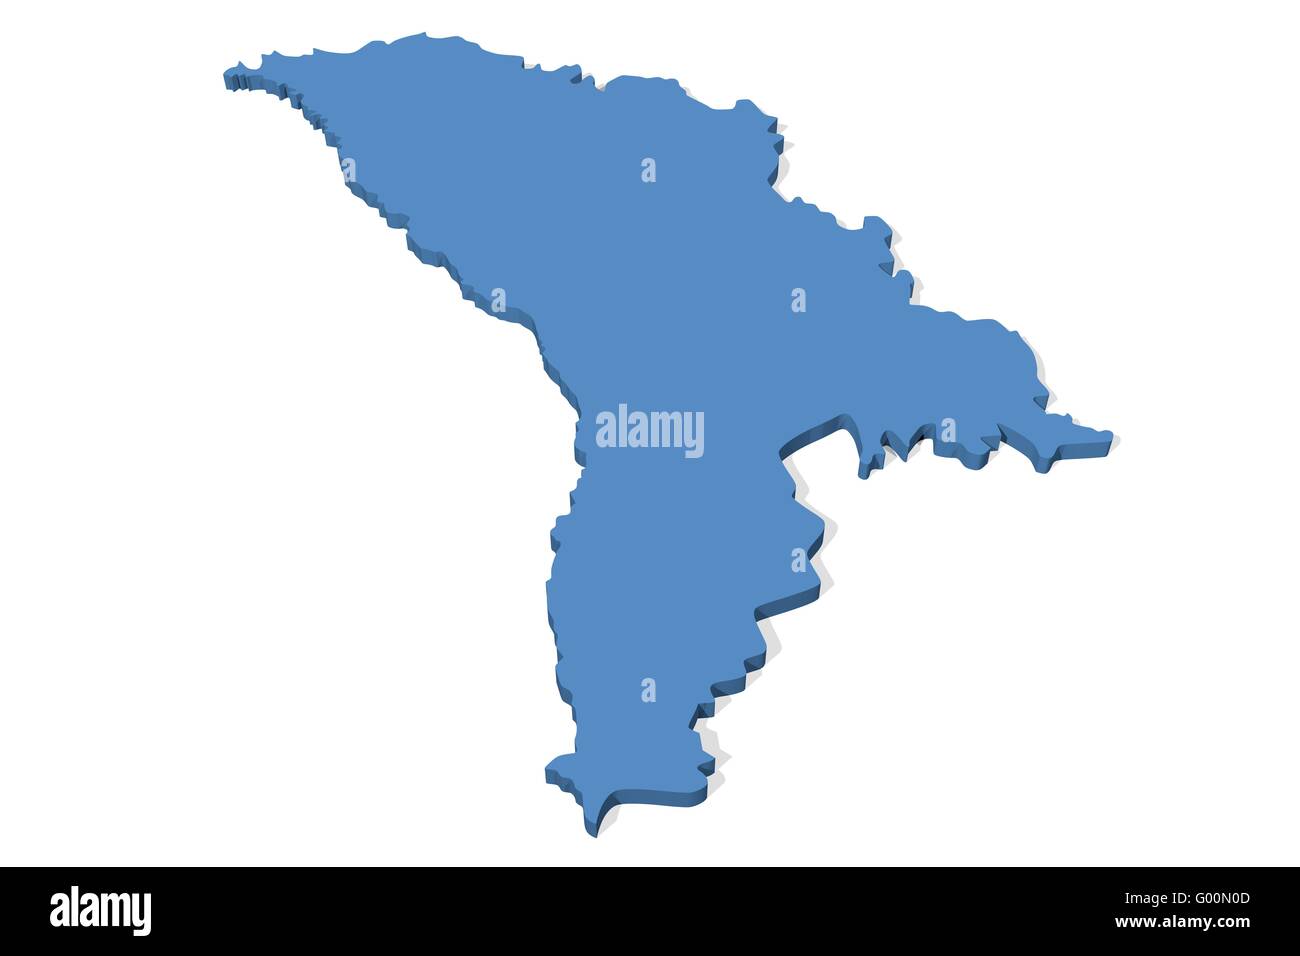 Moldova Map Stock Photo